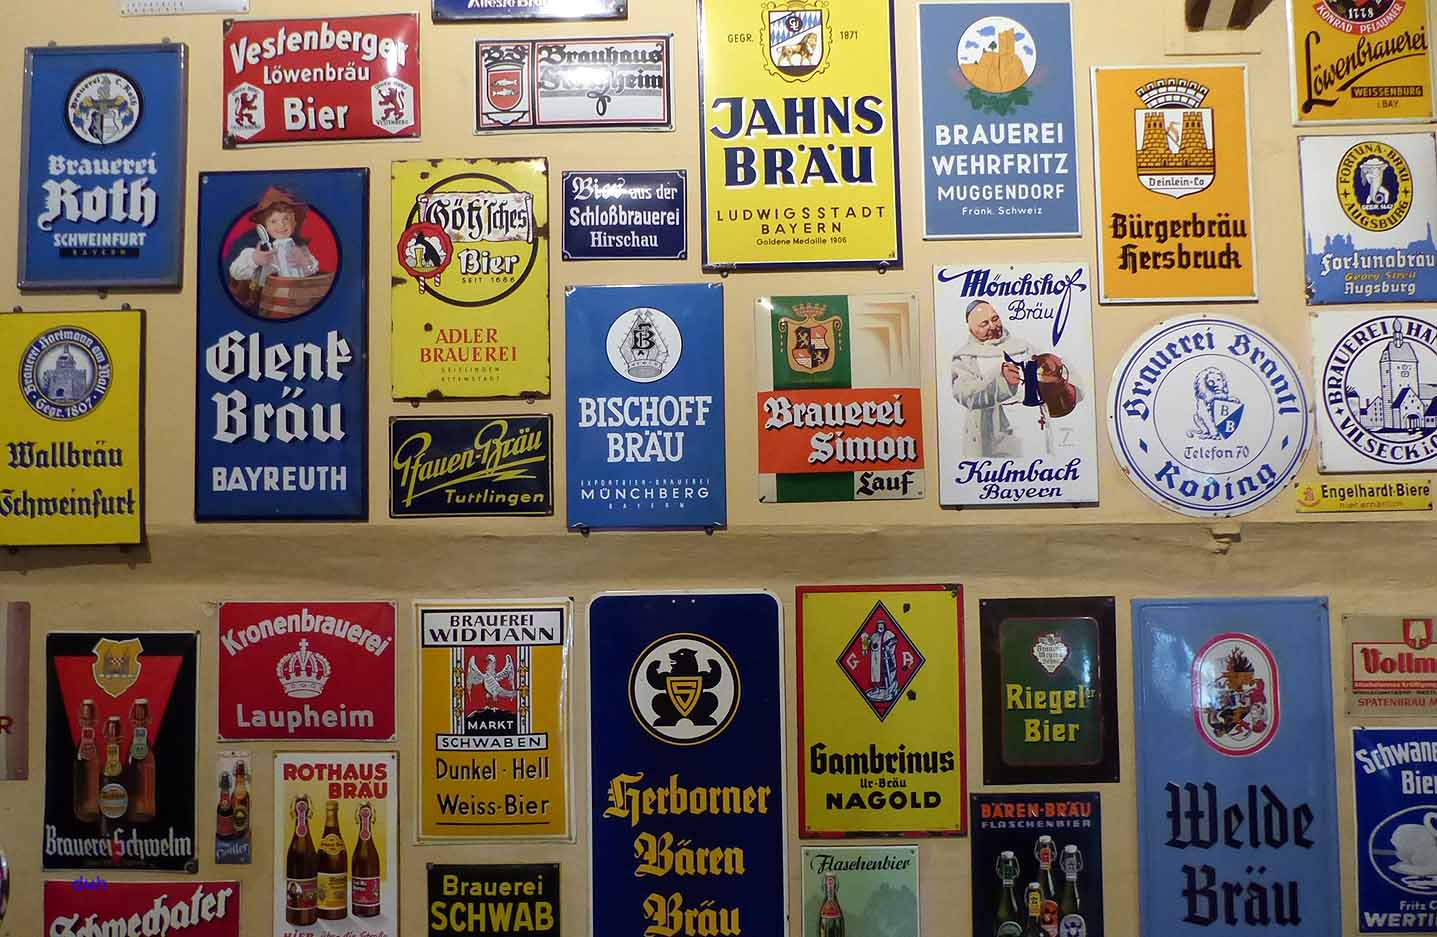 Bayreuth Bier Brauerei Franken